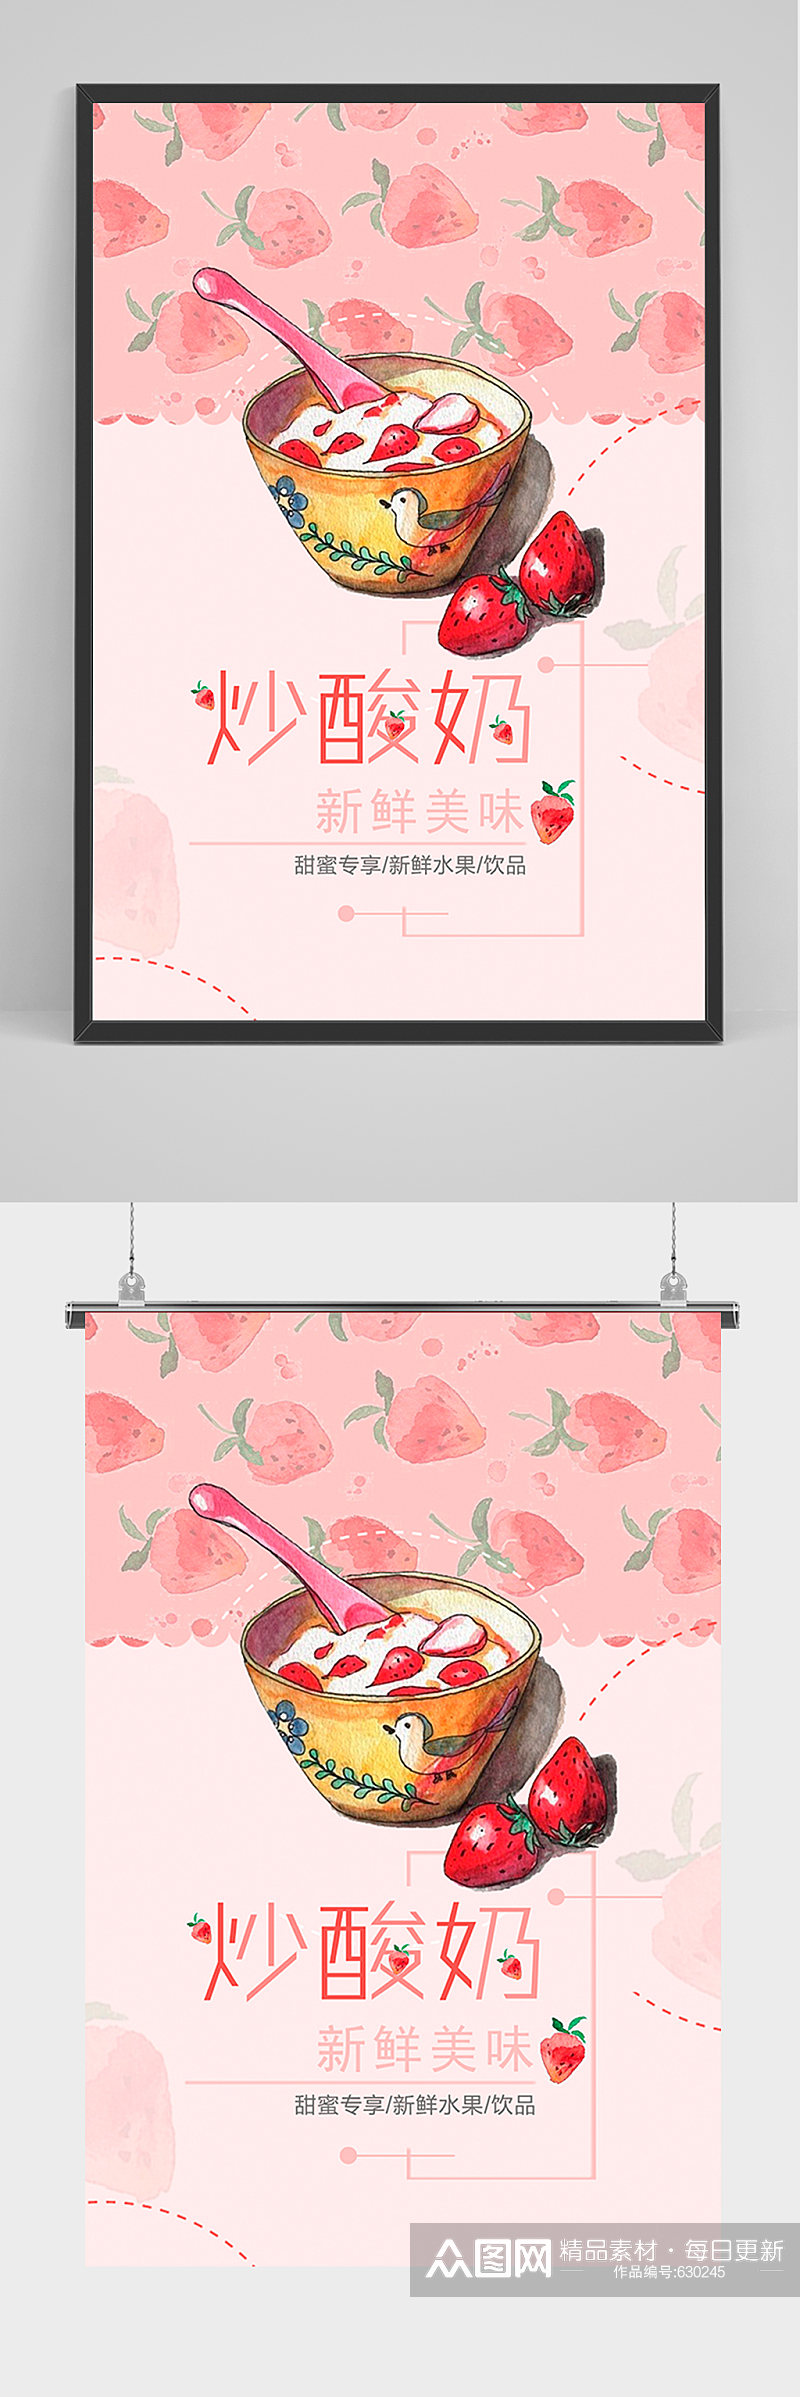 粉色炒酸奶促销海报素材